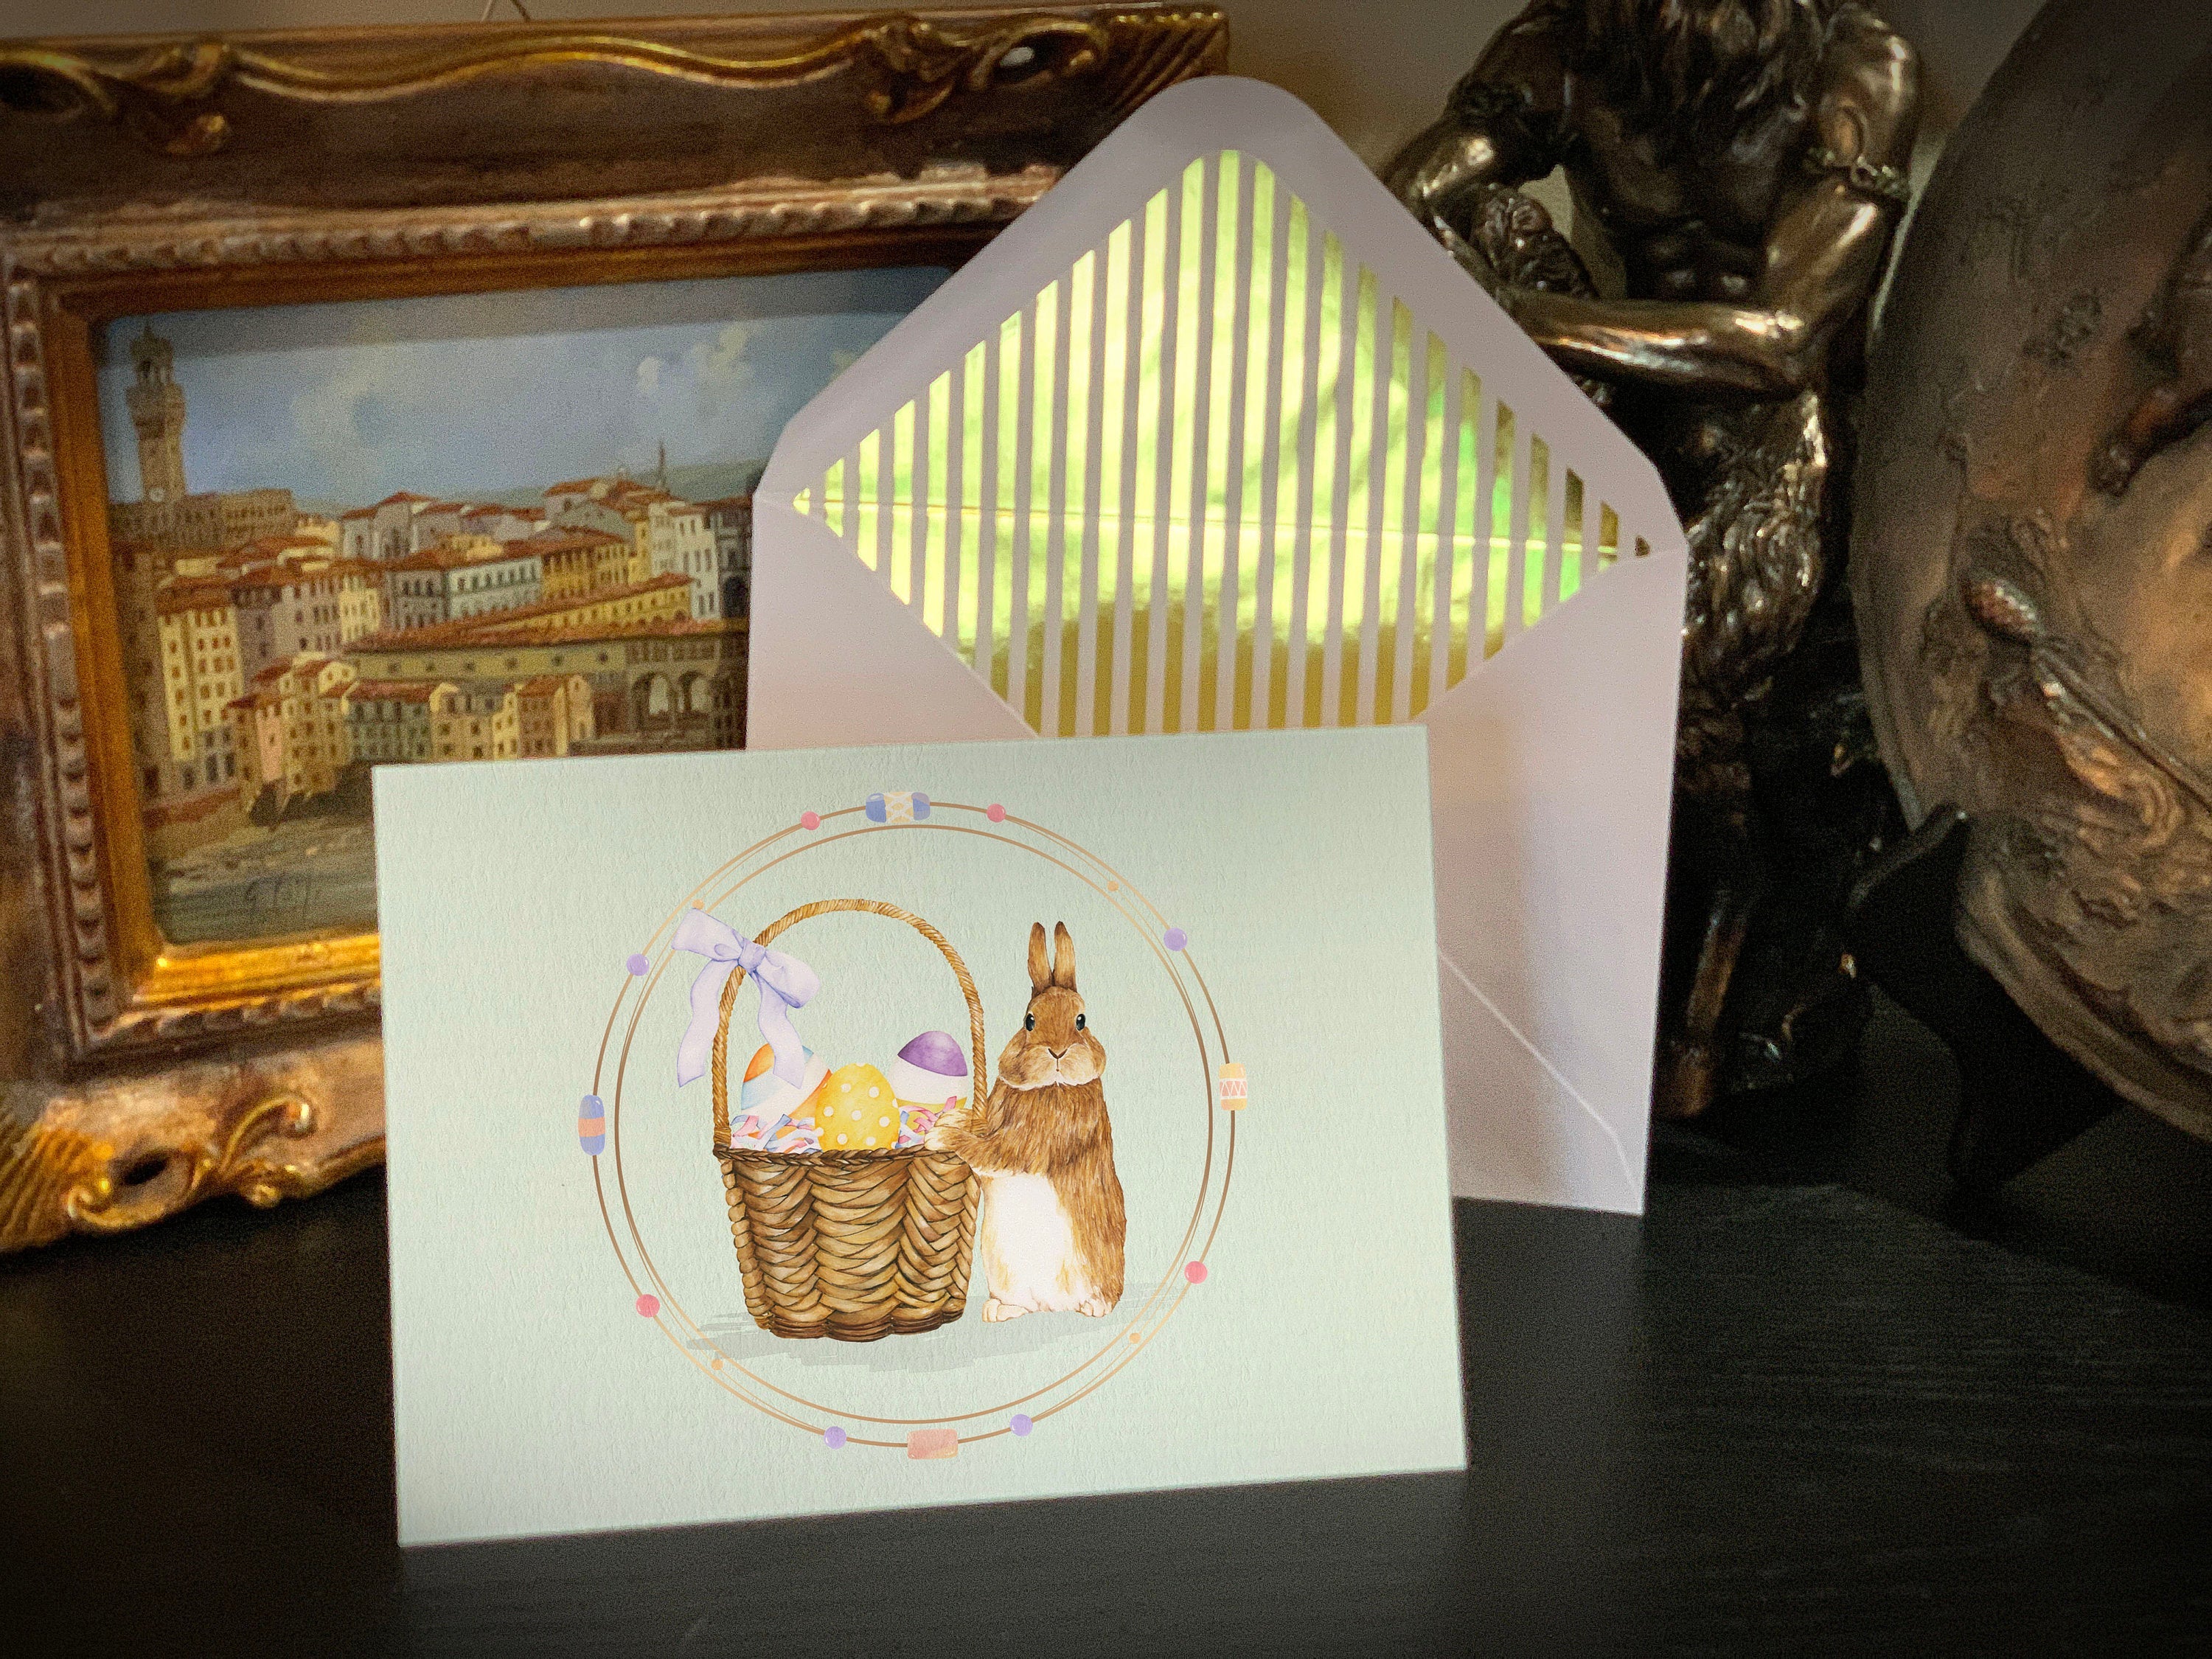 Bunny Egg Basket, Easter Greeting Card with Elegant Striped Gold Foil Envelope, 1 Card/Envelope